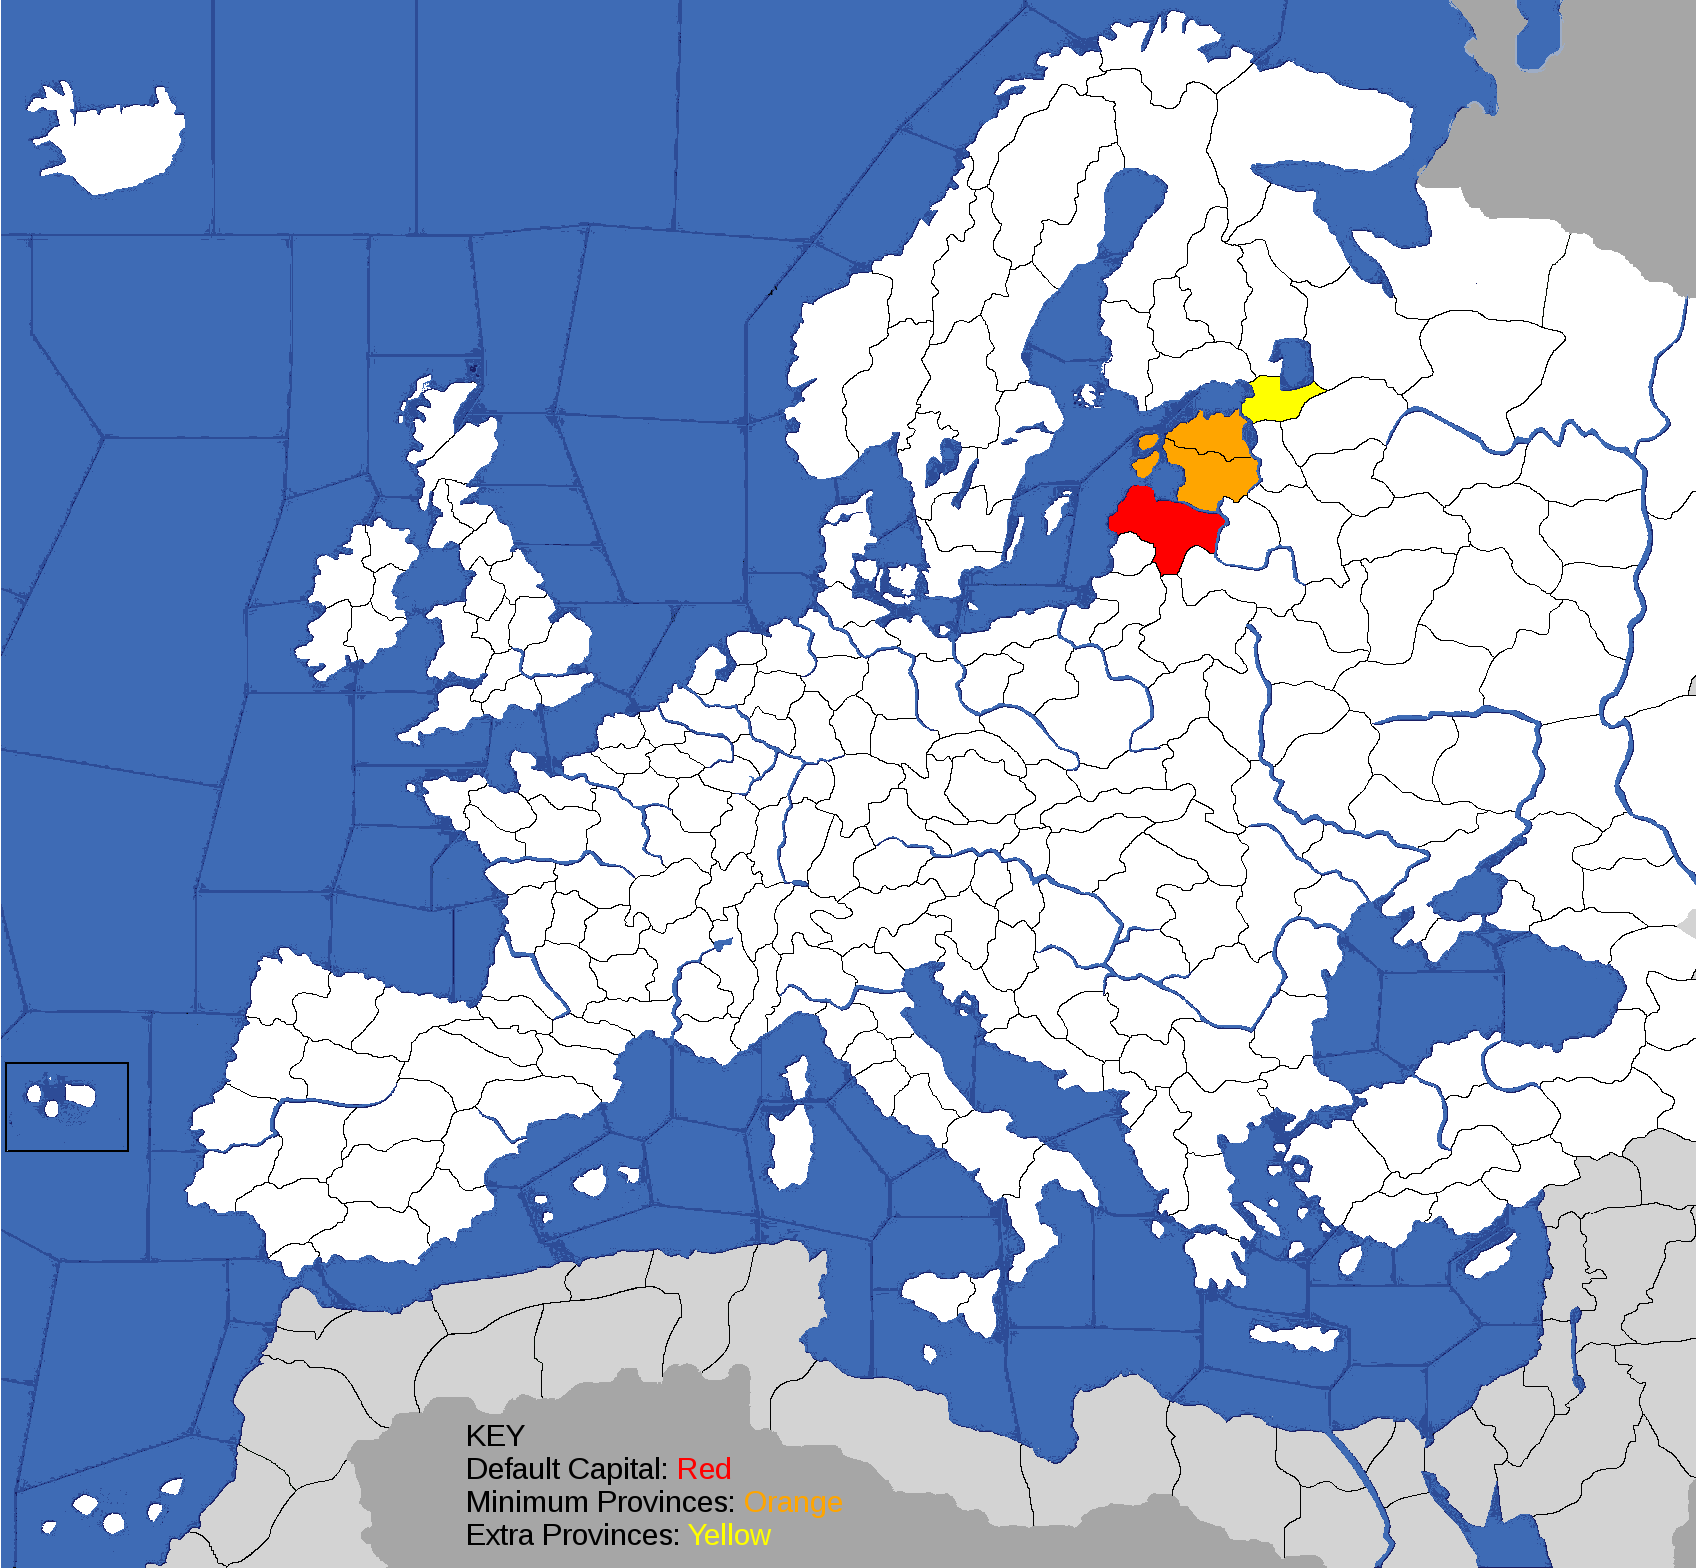 europa universalis iv map livonian order